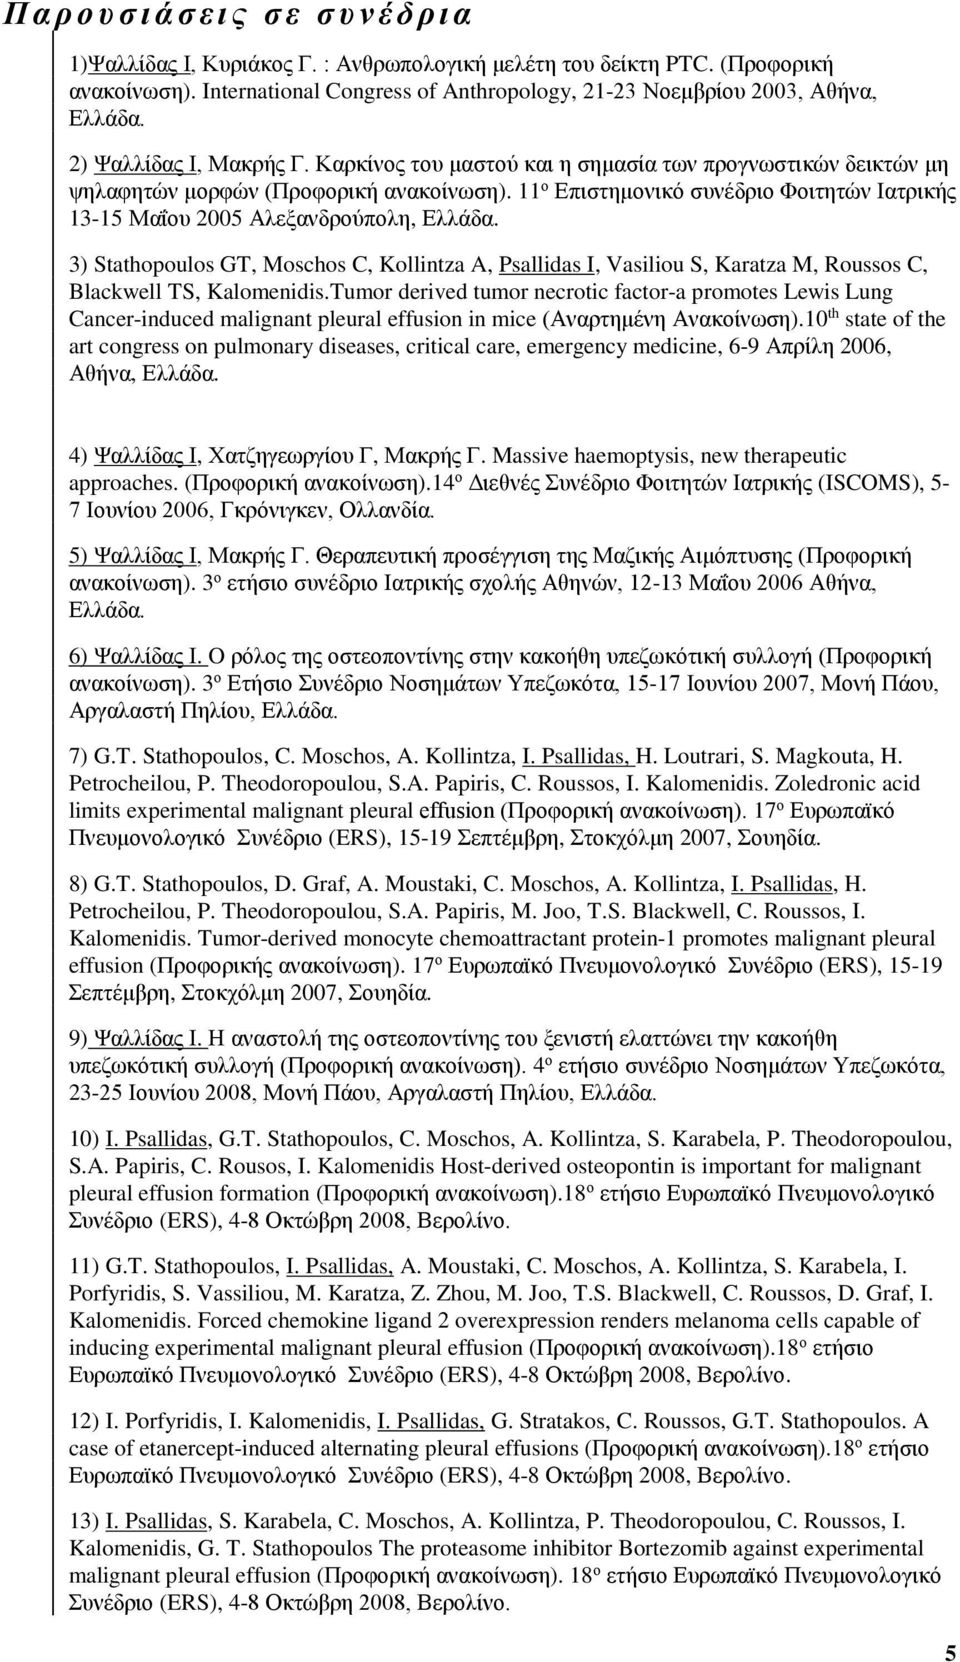 11 ο Επιστημονικό συνέδριο Φοιτητών Ιατρικής 13-15 Μαΐου 2005 Αλεξανδρούπολη, 3) Stathopoulos GT, Moschos C, Kollintza A, Psallidas I, Vasiliou S, Karatza M, Roussos C, Blackwell TS, Kalomenidis.